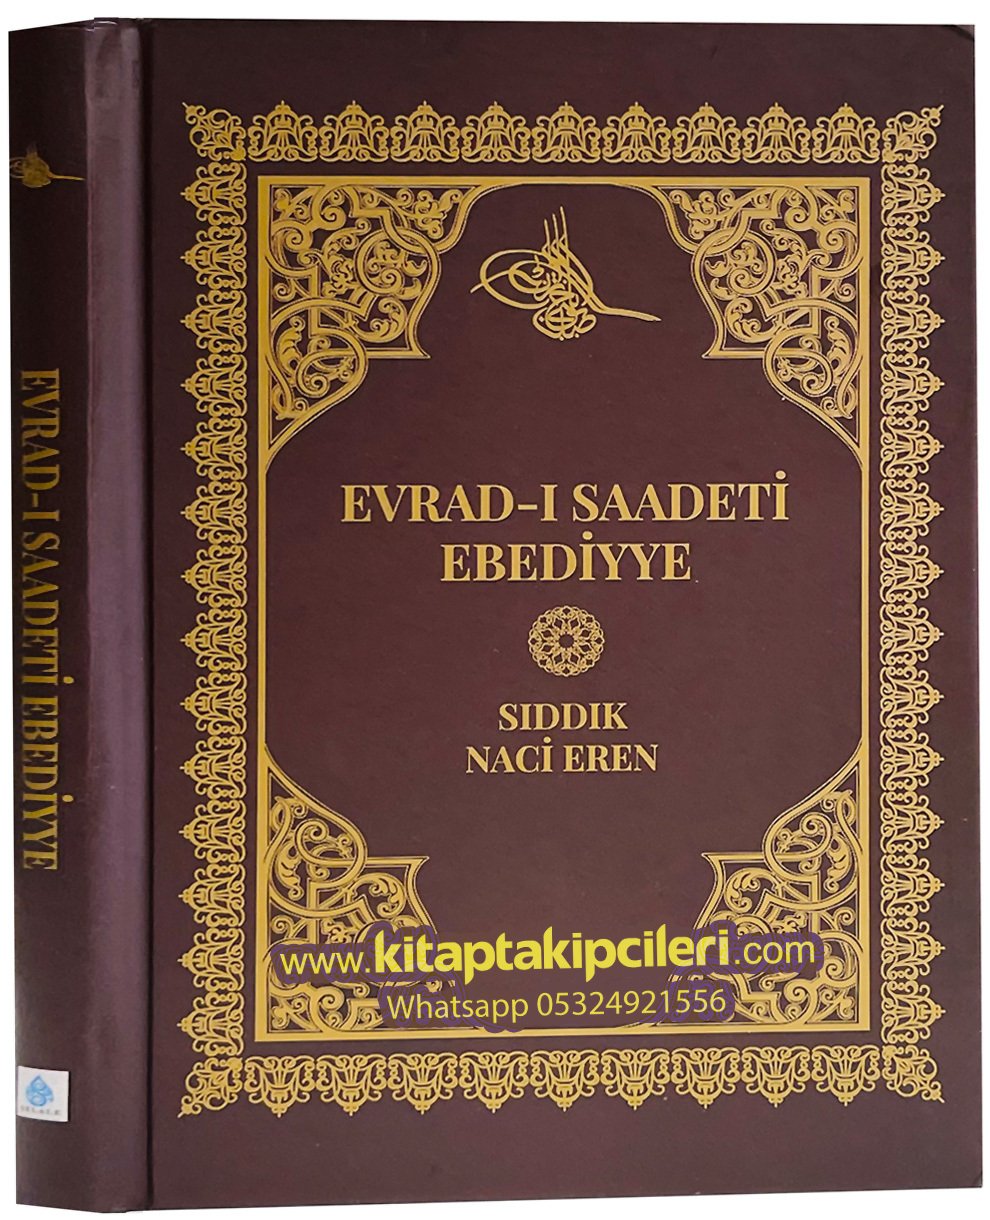 Evradı Saadeti Ebediyye Kitabı, Sıddık Naci Eren, Türkçe Arapça, 176 Sayfa